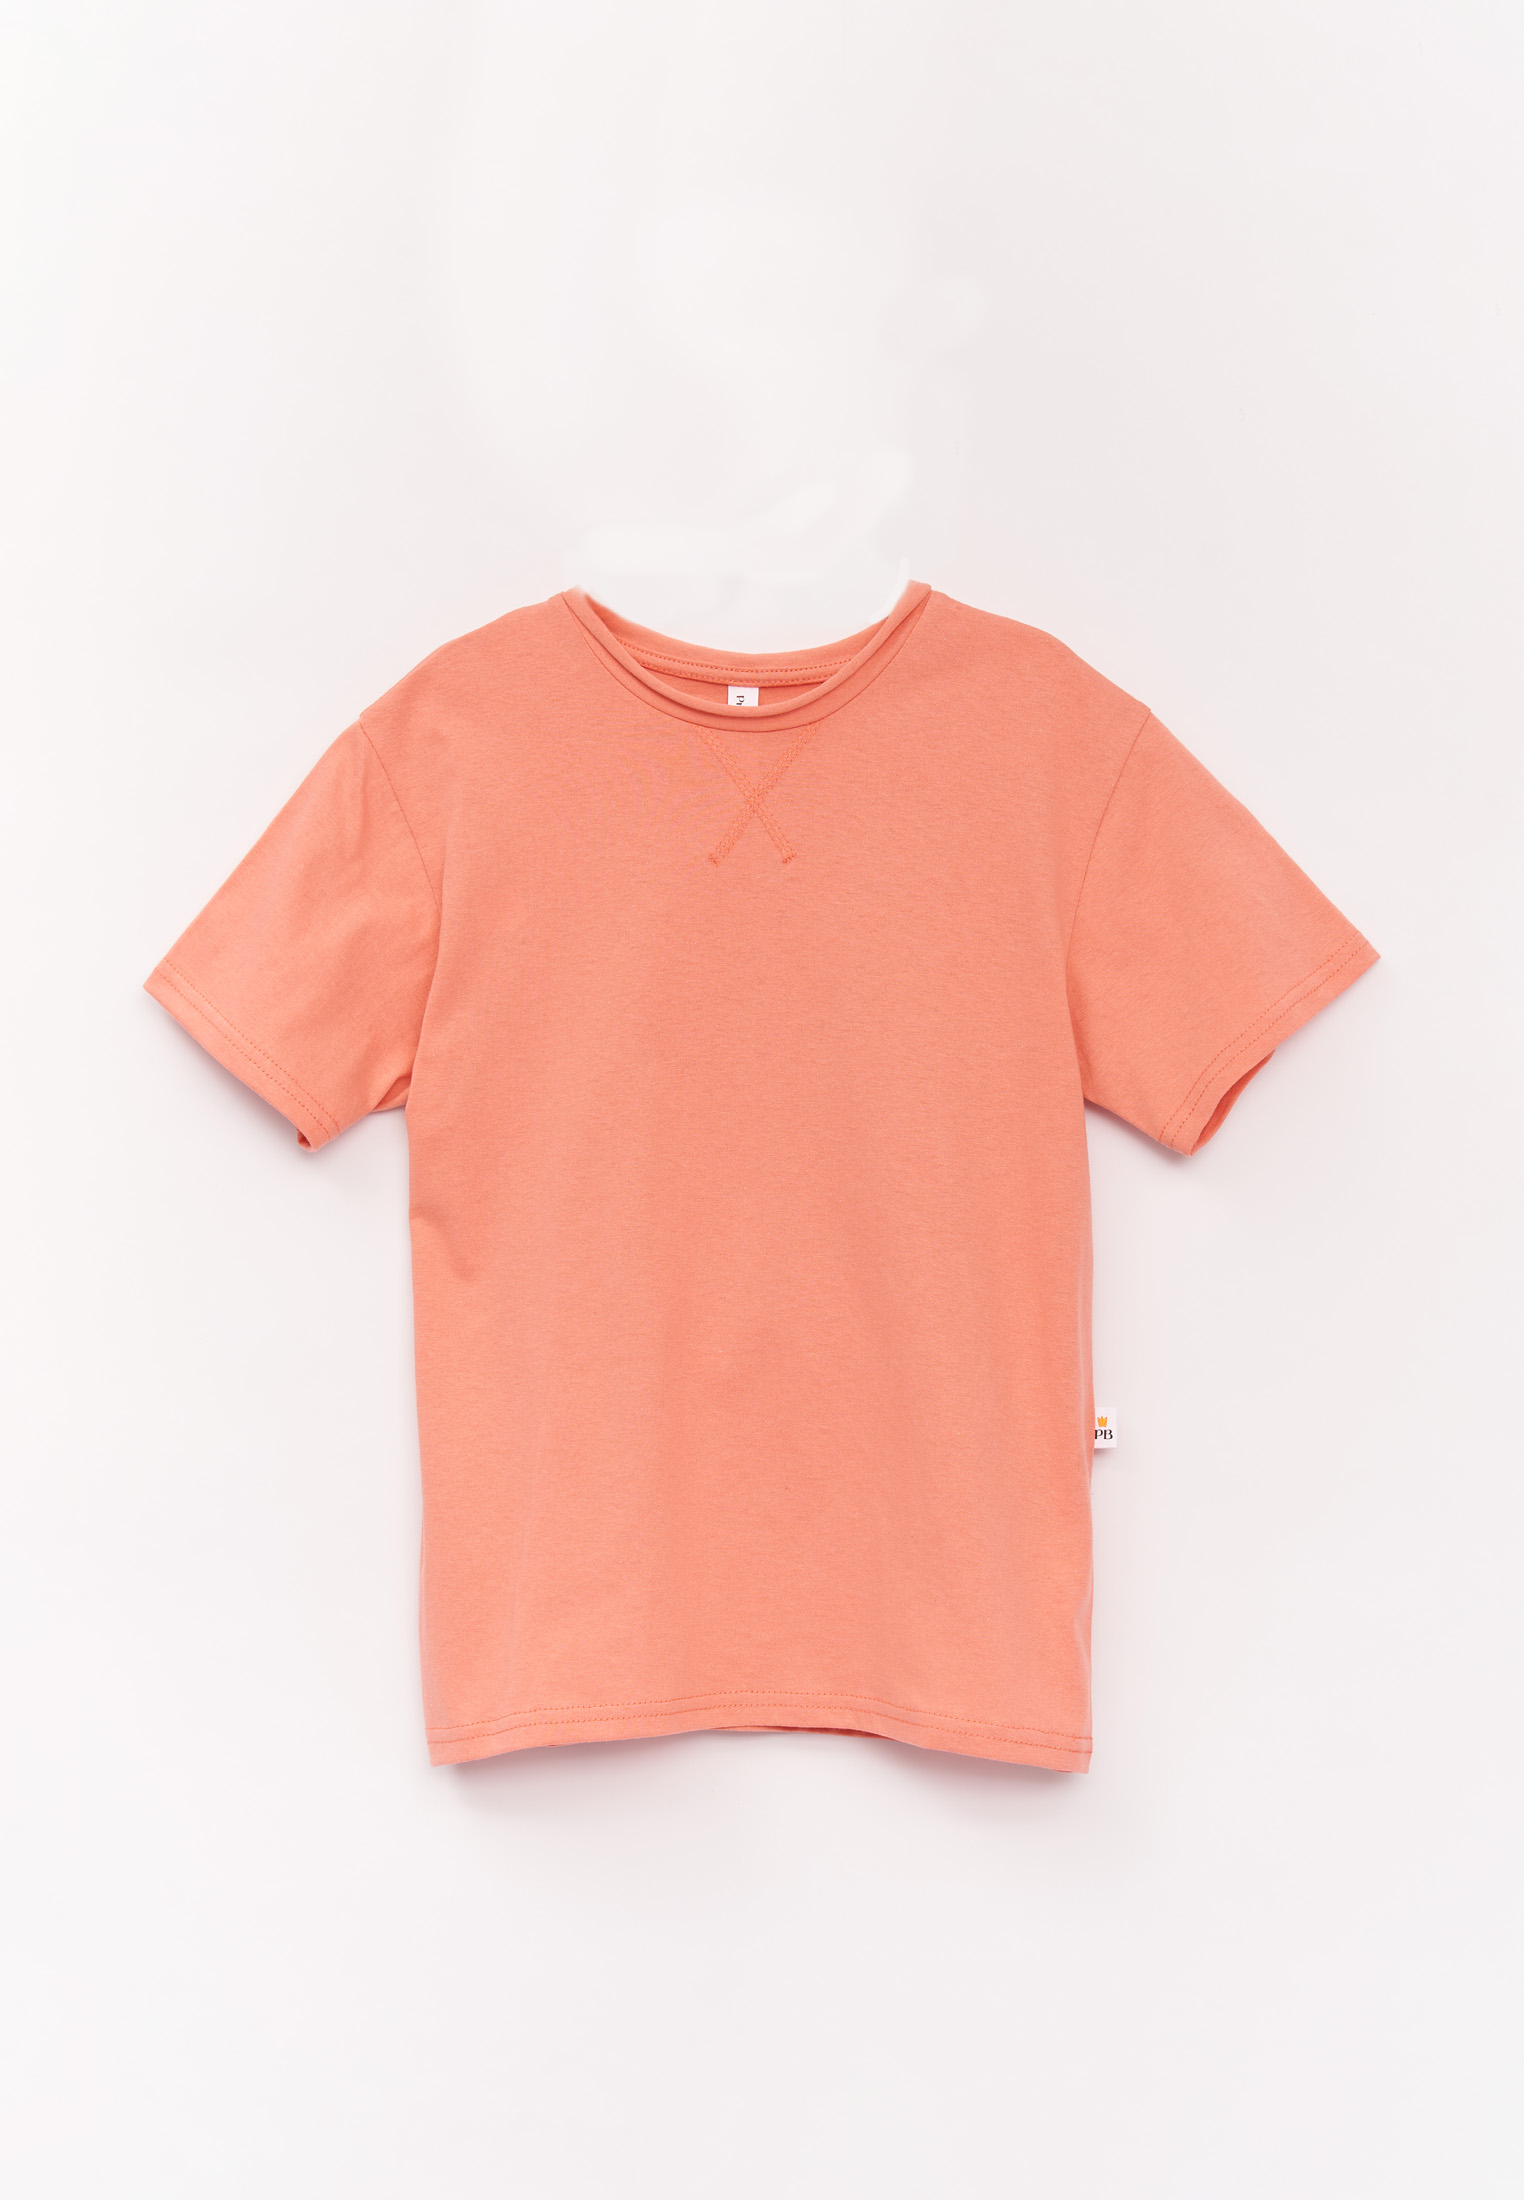 Детская футболка Prime Baby PFU01501 в светло-оранжевом цвете размера 122.